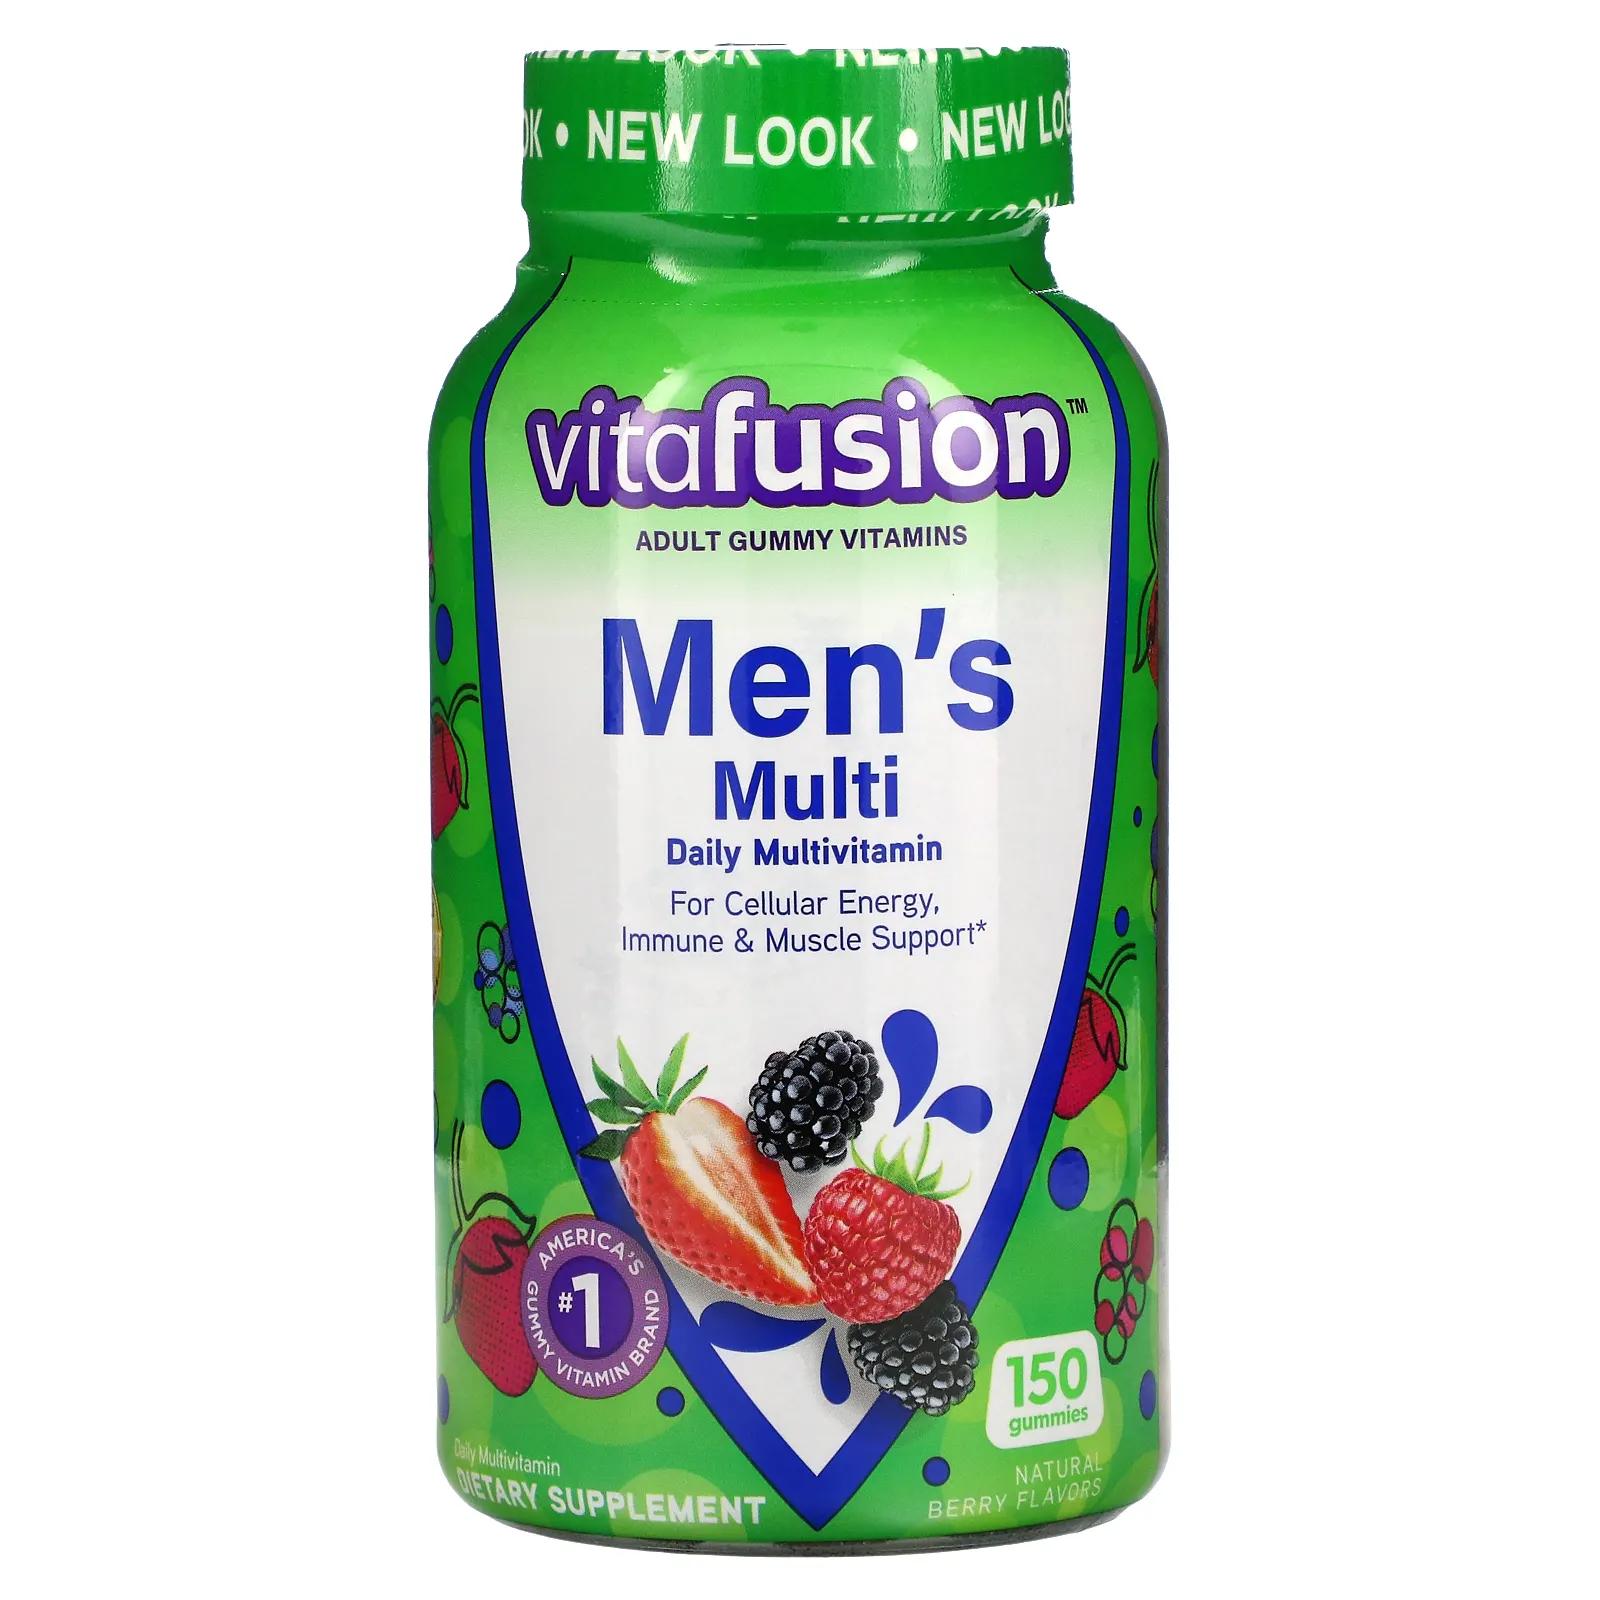 VitaFusion Комплексные мультивитамины для мужчин натуральные ягодные вкусы 150 жевательных таблеток жевательные витамины для женщин vitafusion ягодные вкусы 150 жевательных таблеток